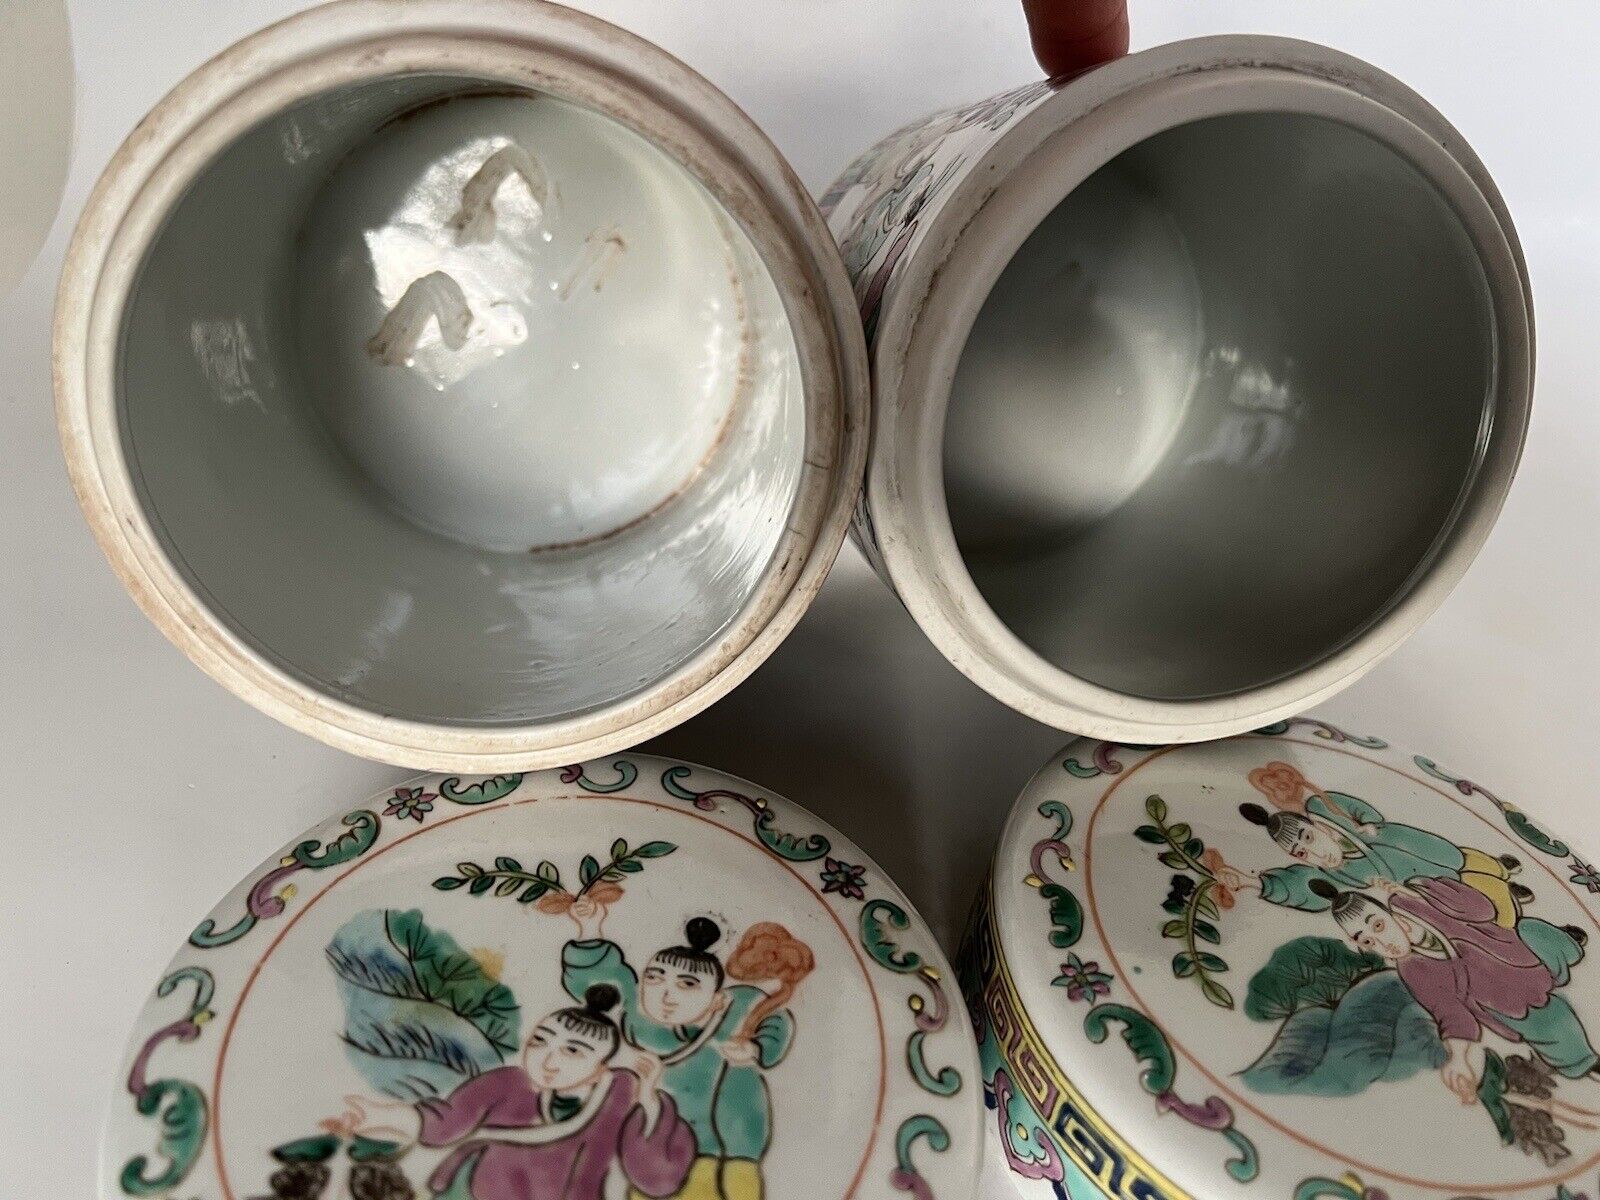 2 Antique Chinese Hand Paint Dragon Children Cylinder Hallmark Famille Jars 6" Без бренда - фотография #17